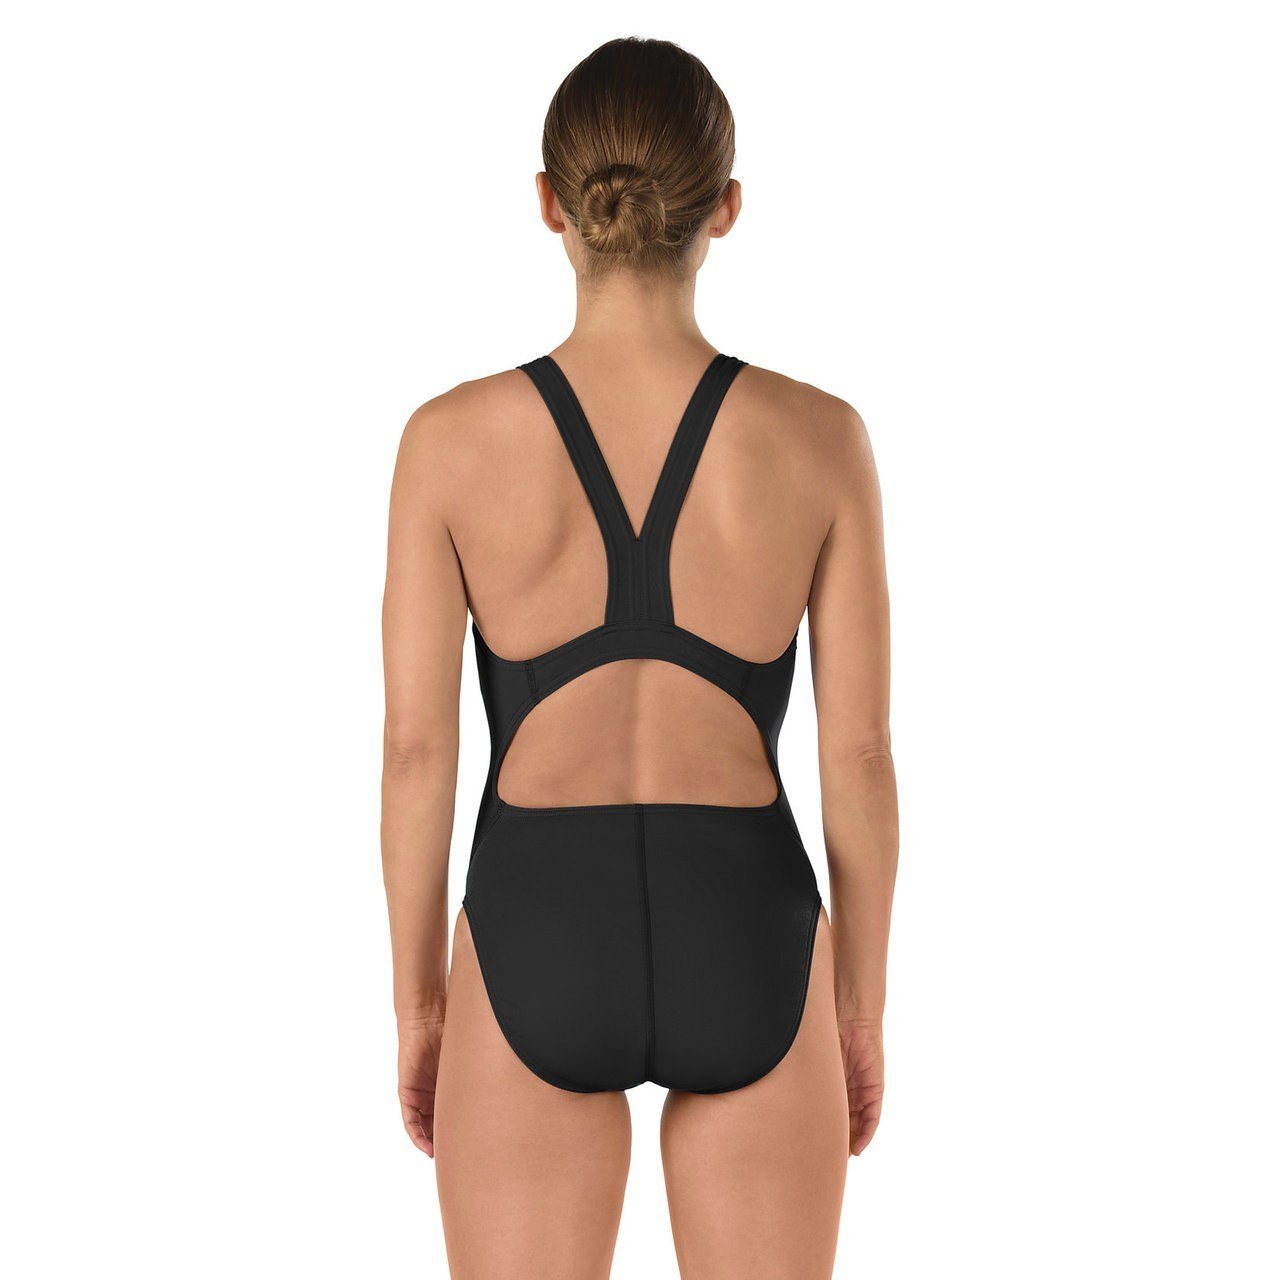 SPEEDO Women's Super Proback Swimsuit, Navy, 10/36 - image 2 of 2